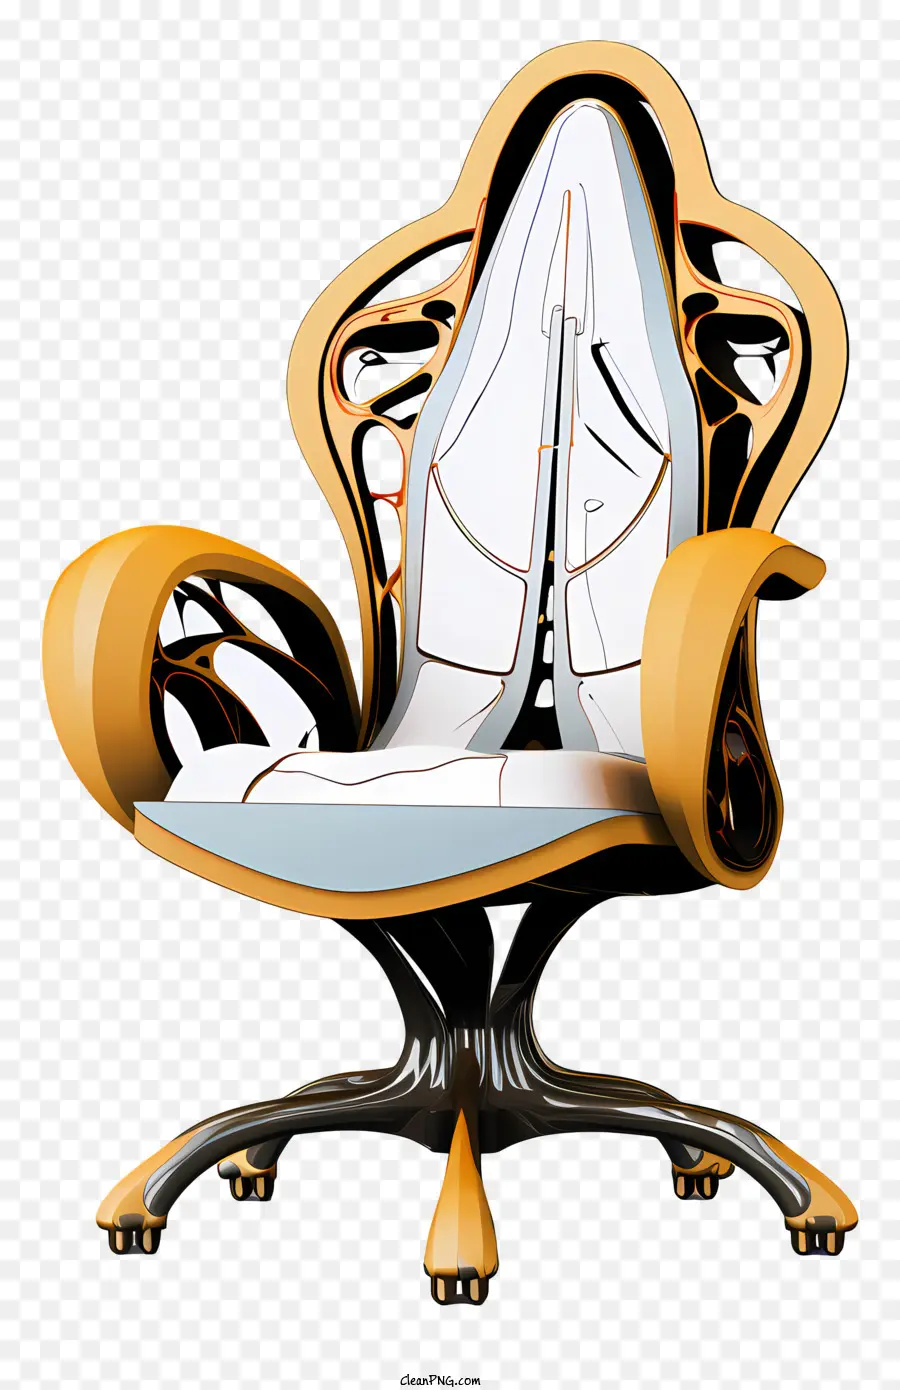 sedia da ufficio futuristica Design bianco e oro Accenti neri posteriori curvi e sedile Golden - Sedia futuristica da ufficio con design bianco, oro e nero